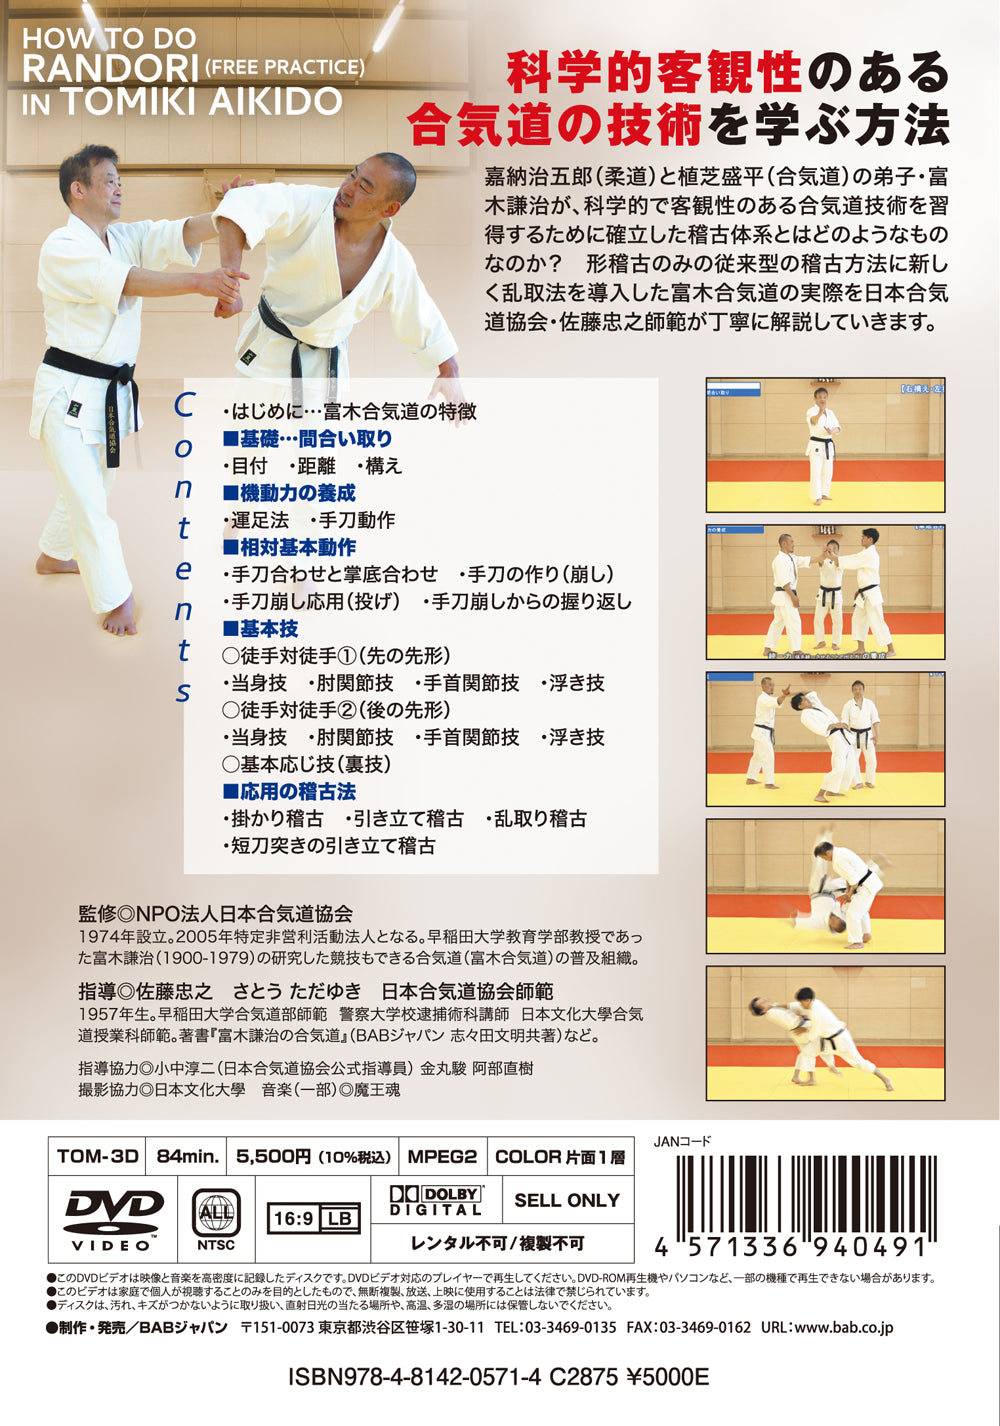 Cómo hacer Randori en Tomiki Aikido DVD de Tadayuki Sato